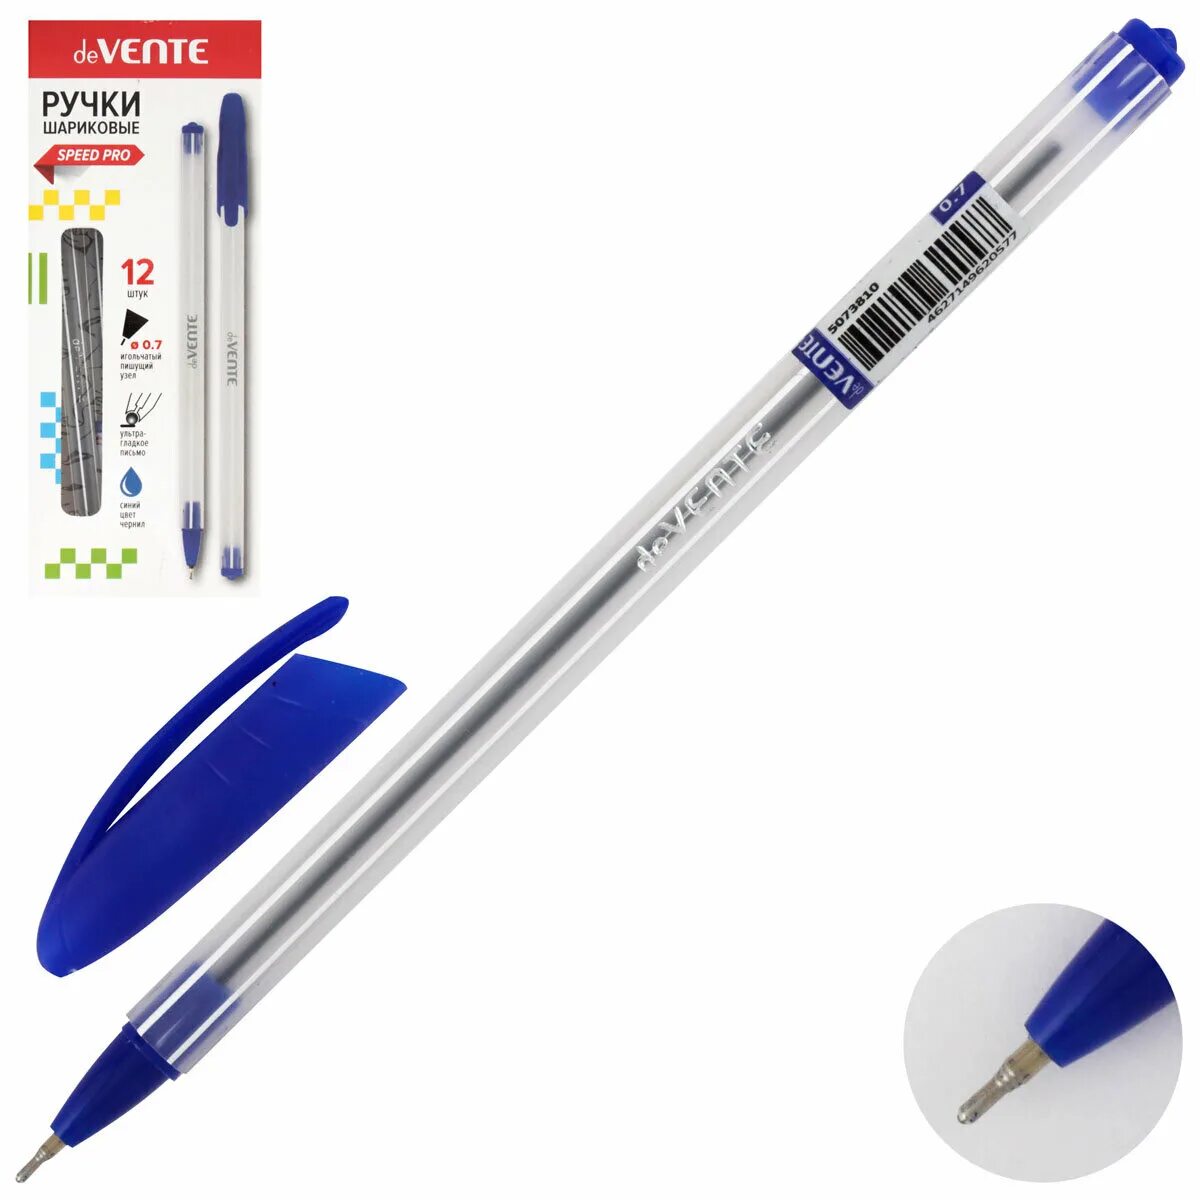 Mist 0.7. Ручка масляная DEVENTE синяя 5073810. Ручка DEVENTE Office Max 0.7. Ручка шар. DEVENTE Vista 0.7мм, синяя 5073671*12. Ручка шарик. Масл. BRAUBERG Marine синяя 0,7 мм 142709, шт.